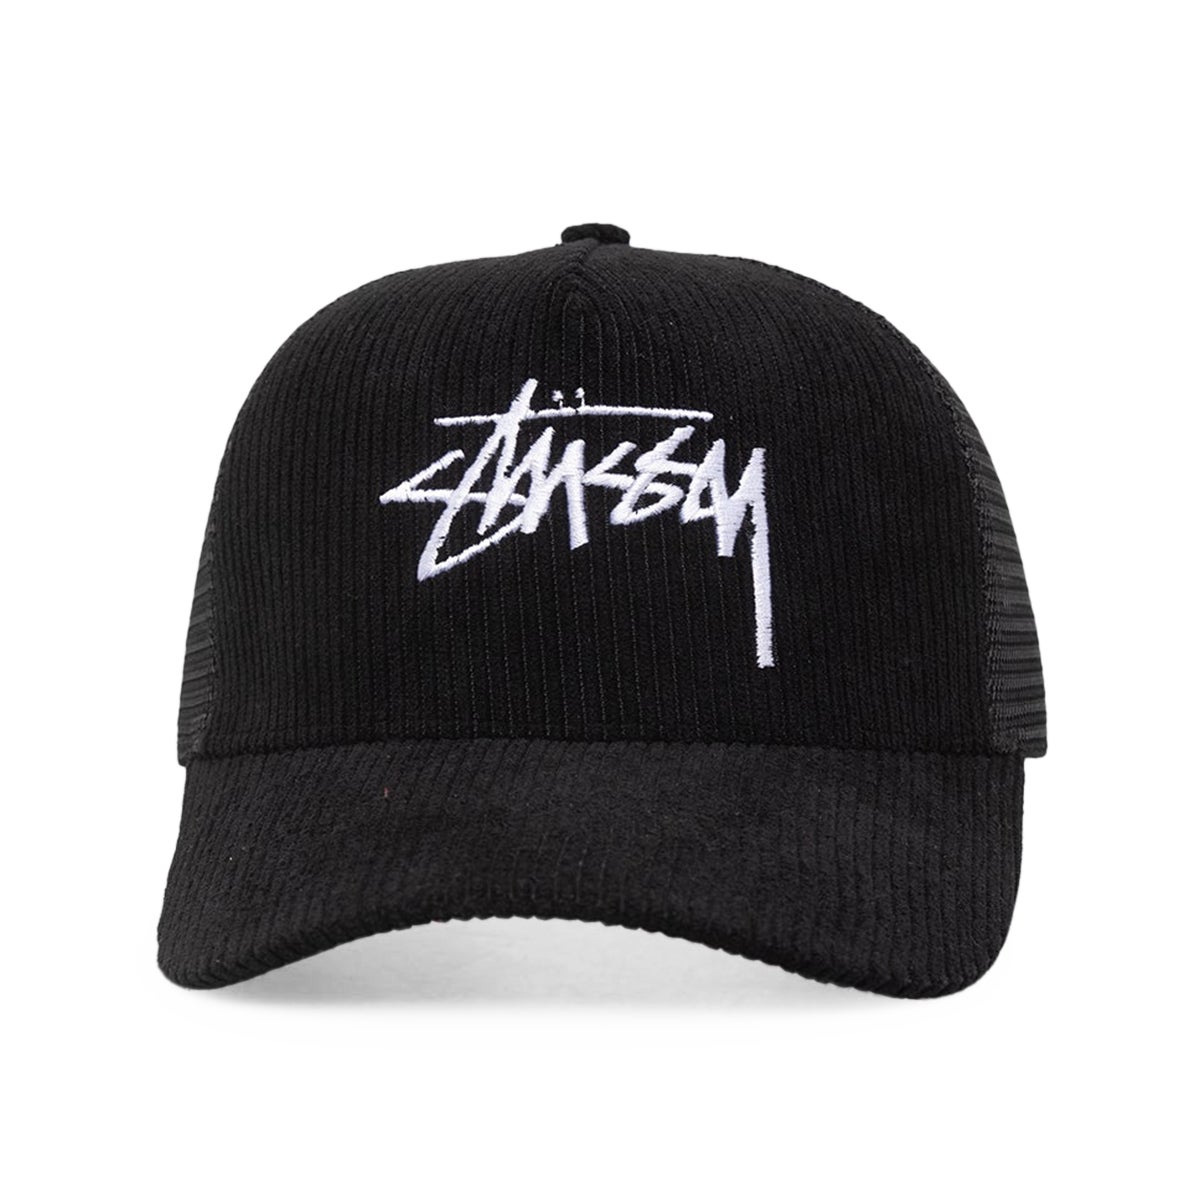 Stussy Mesh Trucker Hat in Black for Men